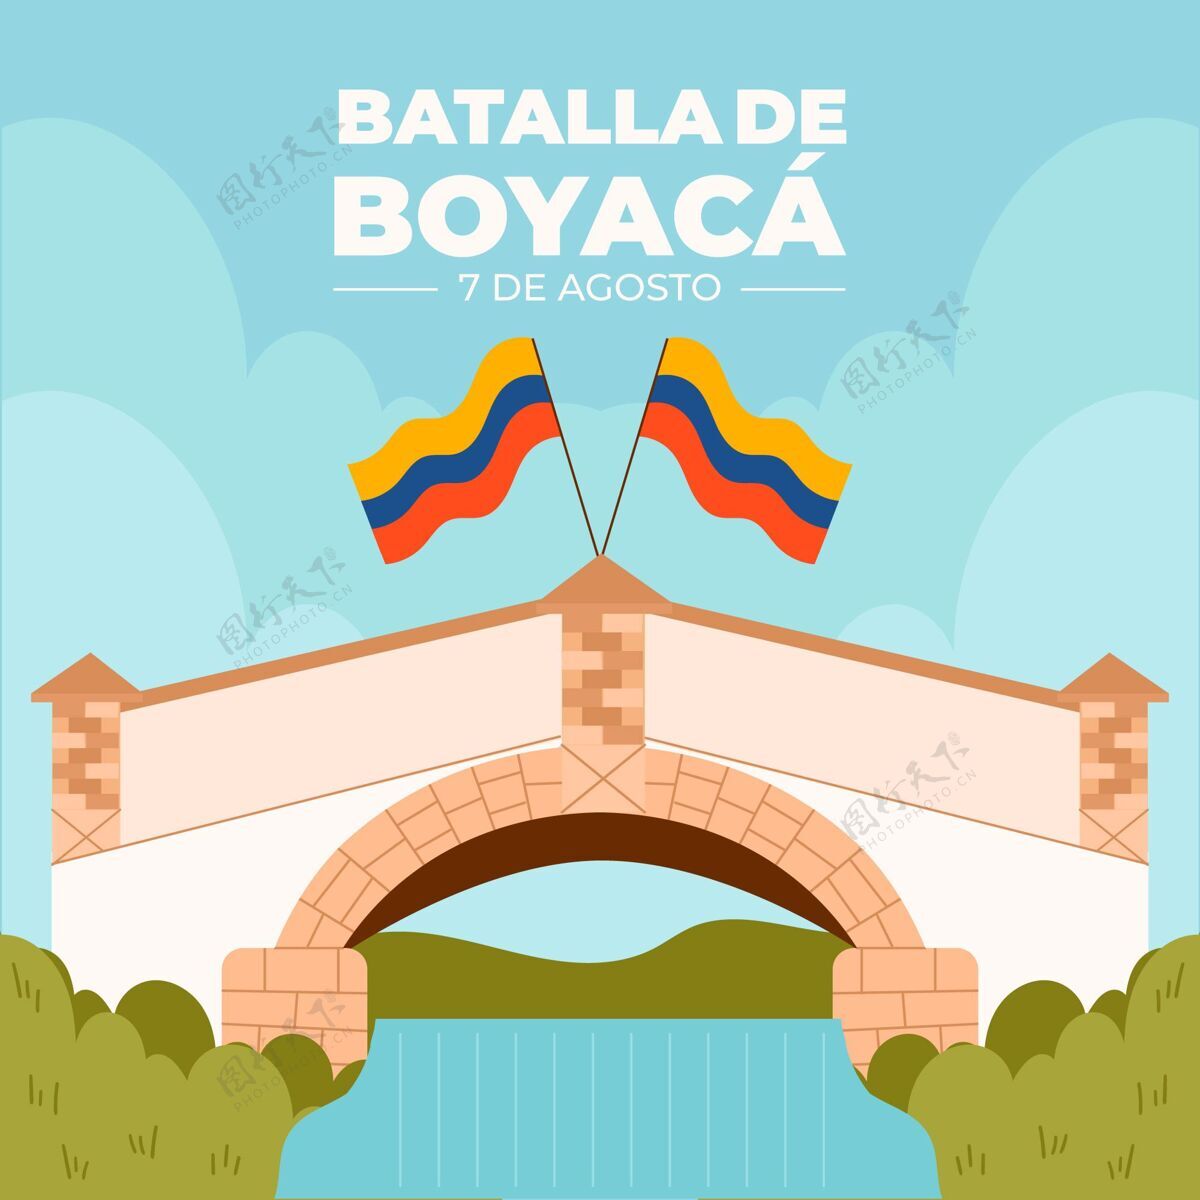 平面设计平底哥伦比亚巴塔拉德博亚卡插图哥伦比亚人战斗事件